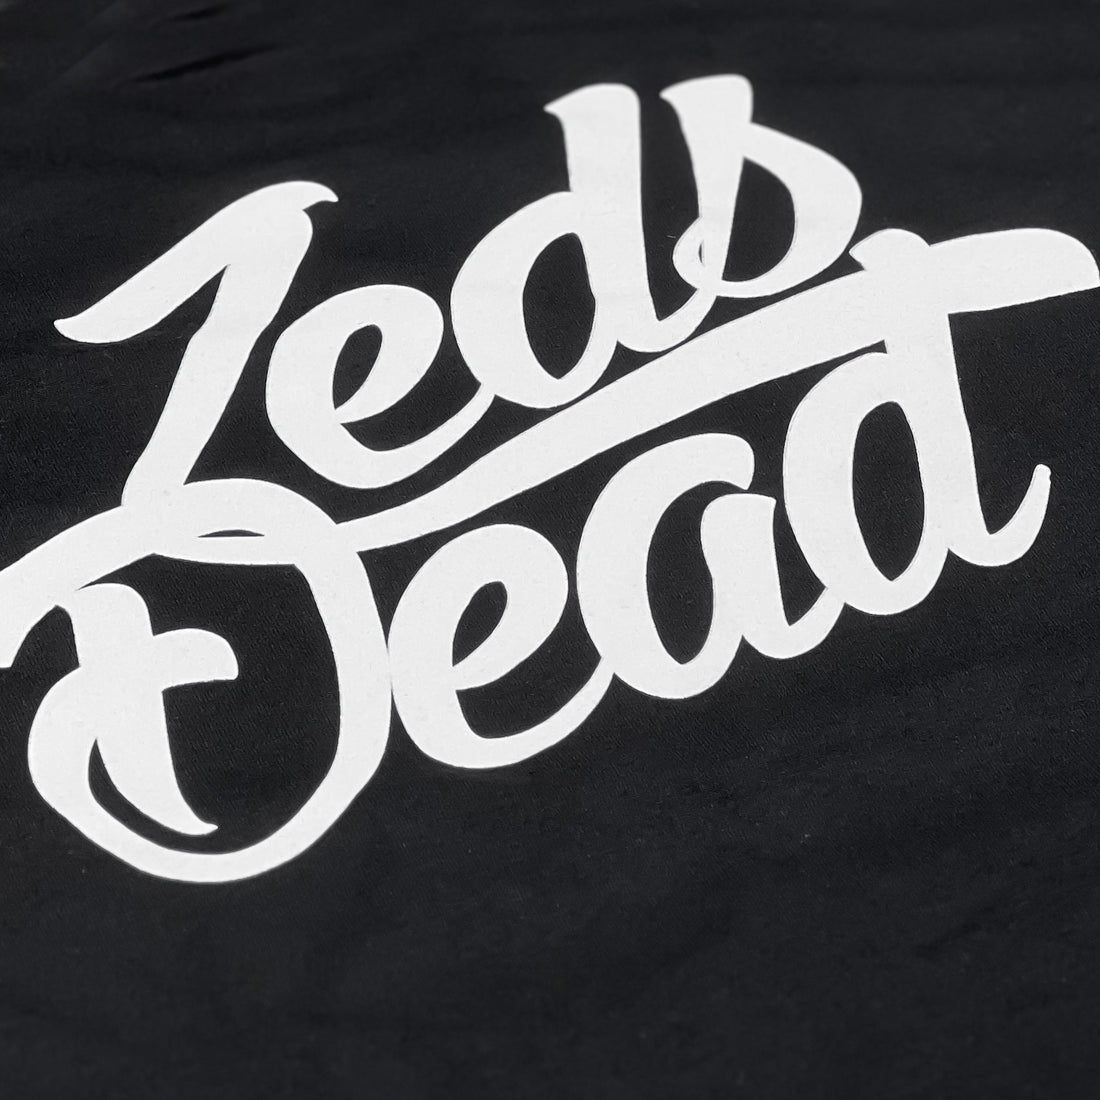 Zeds Dead - Z's Up - Black Tee